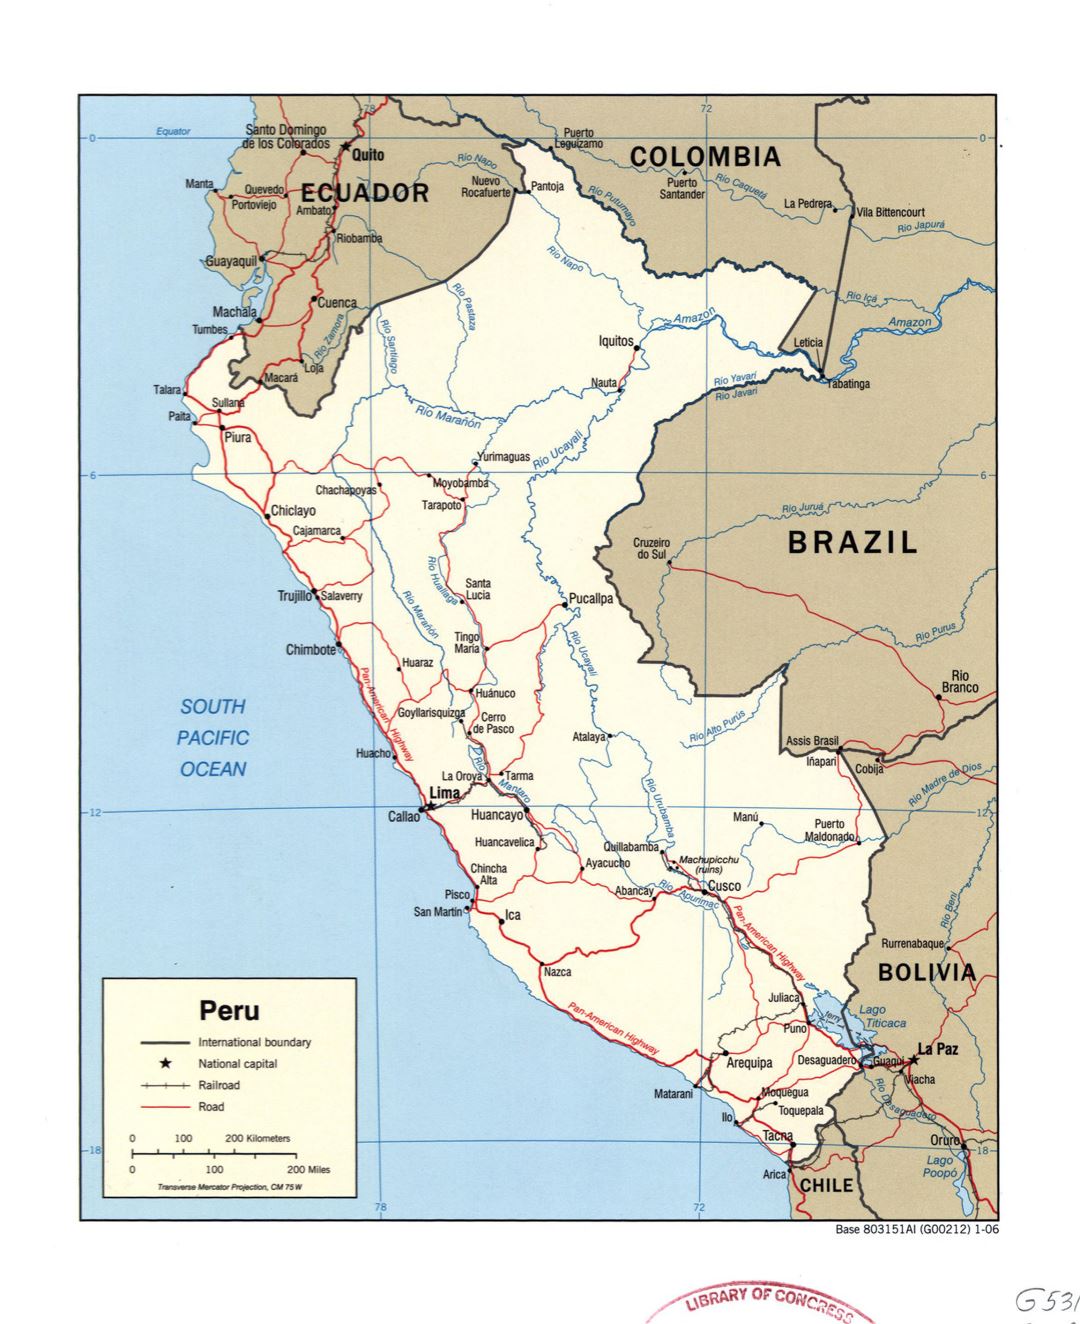 Большая детальная политическая карта Перу с пометками дорог, железных дорог и крупных городов - 2006